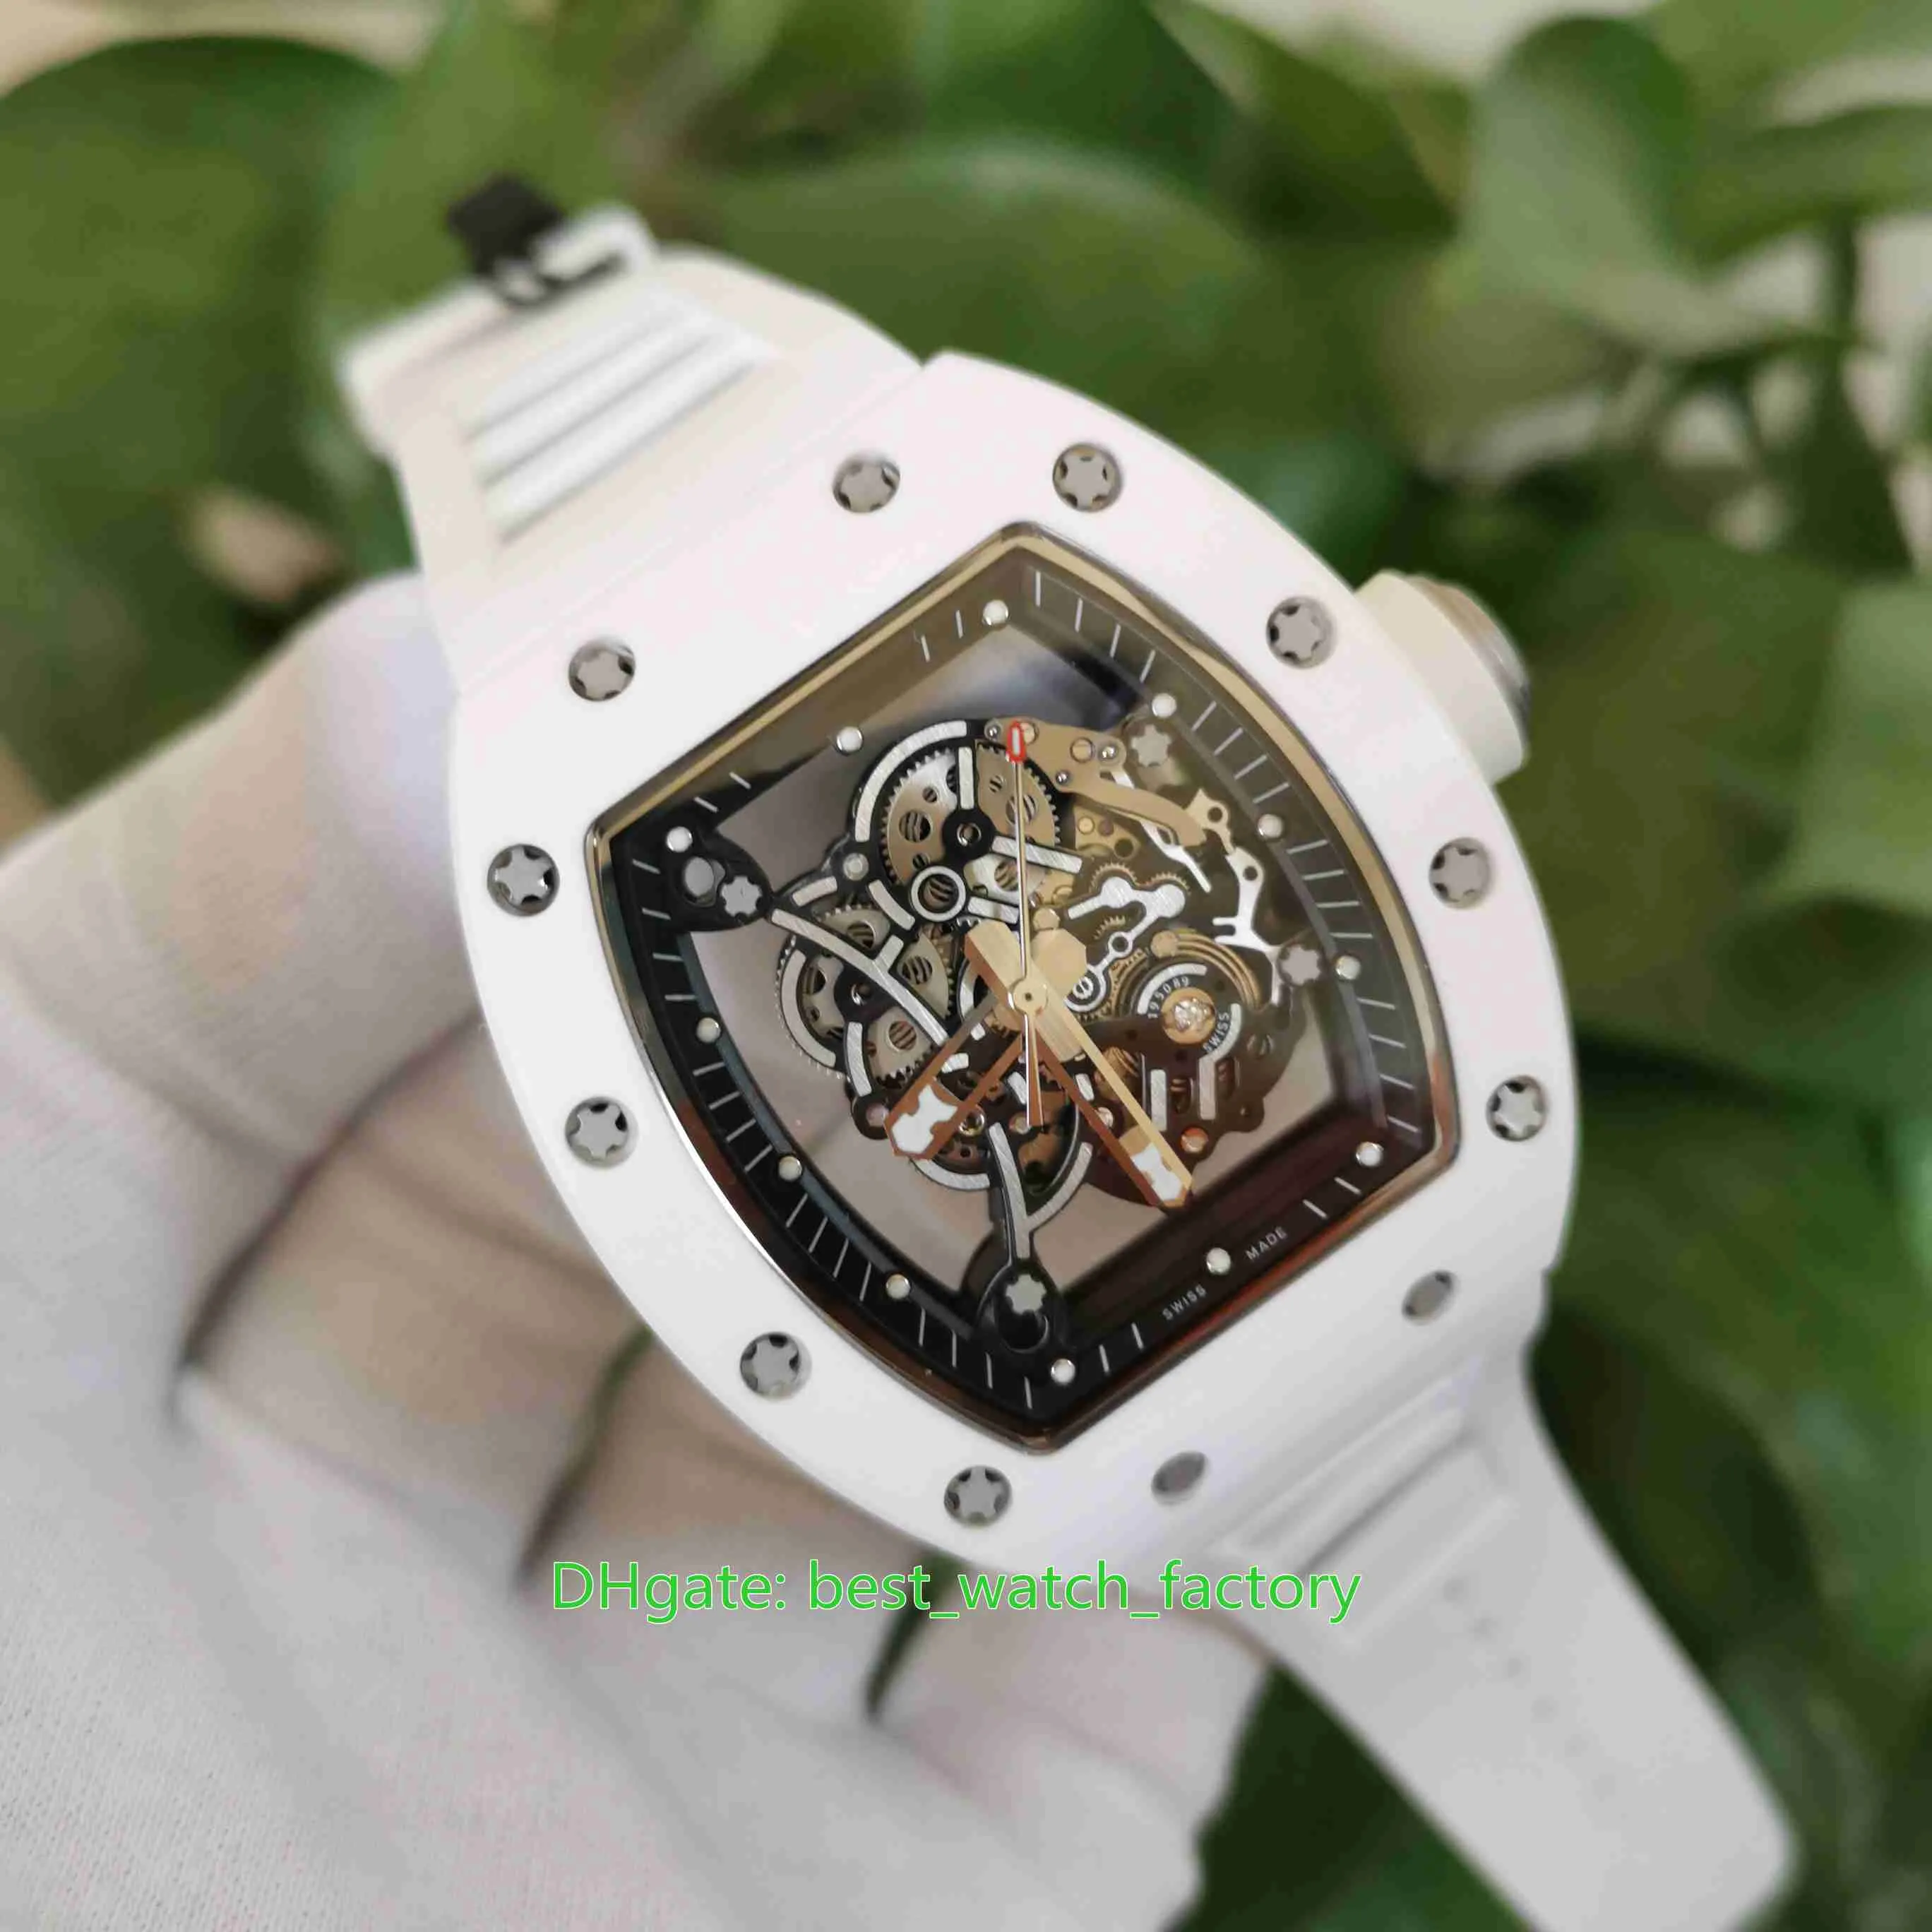 최고 품질의 시계 판매 42mm x 50mm RM055 골격 세라믹 베젤 투명 핸드 윈딩 RMUL3 기계식 자동 남성 263T